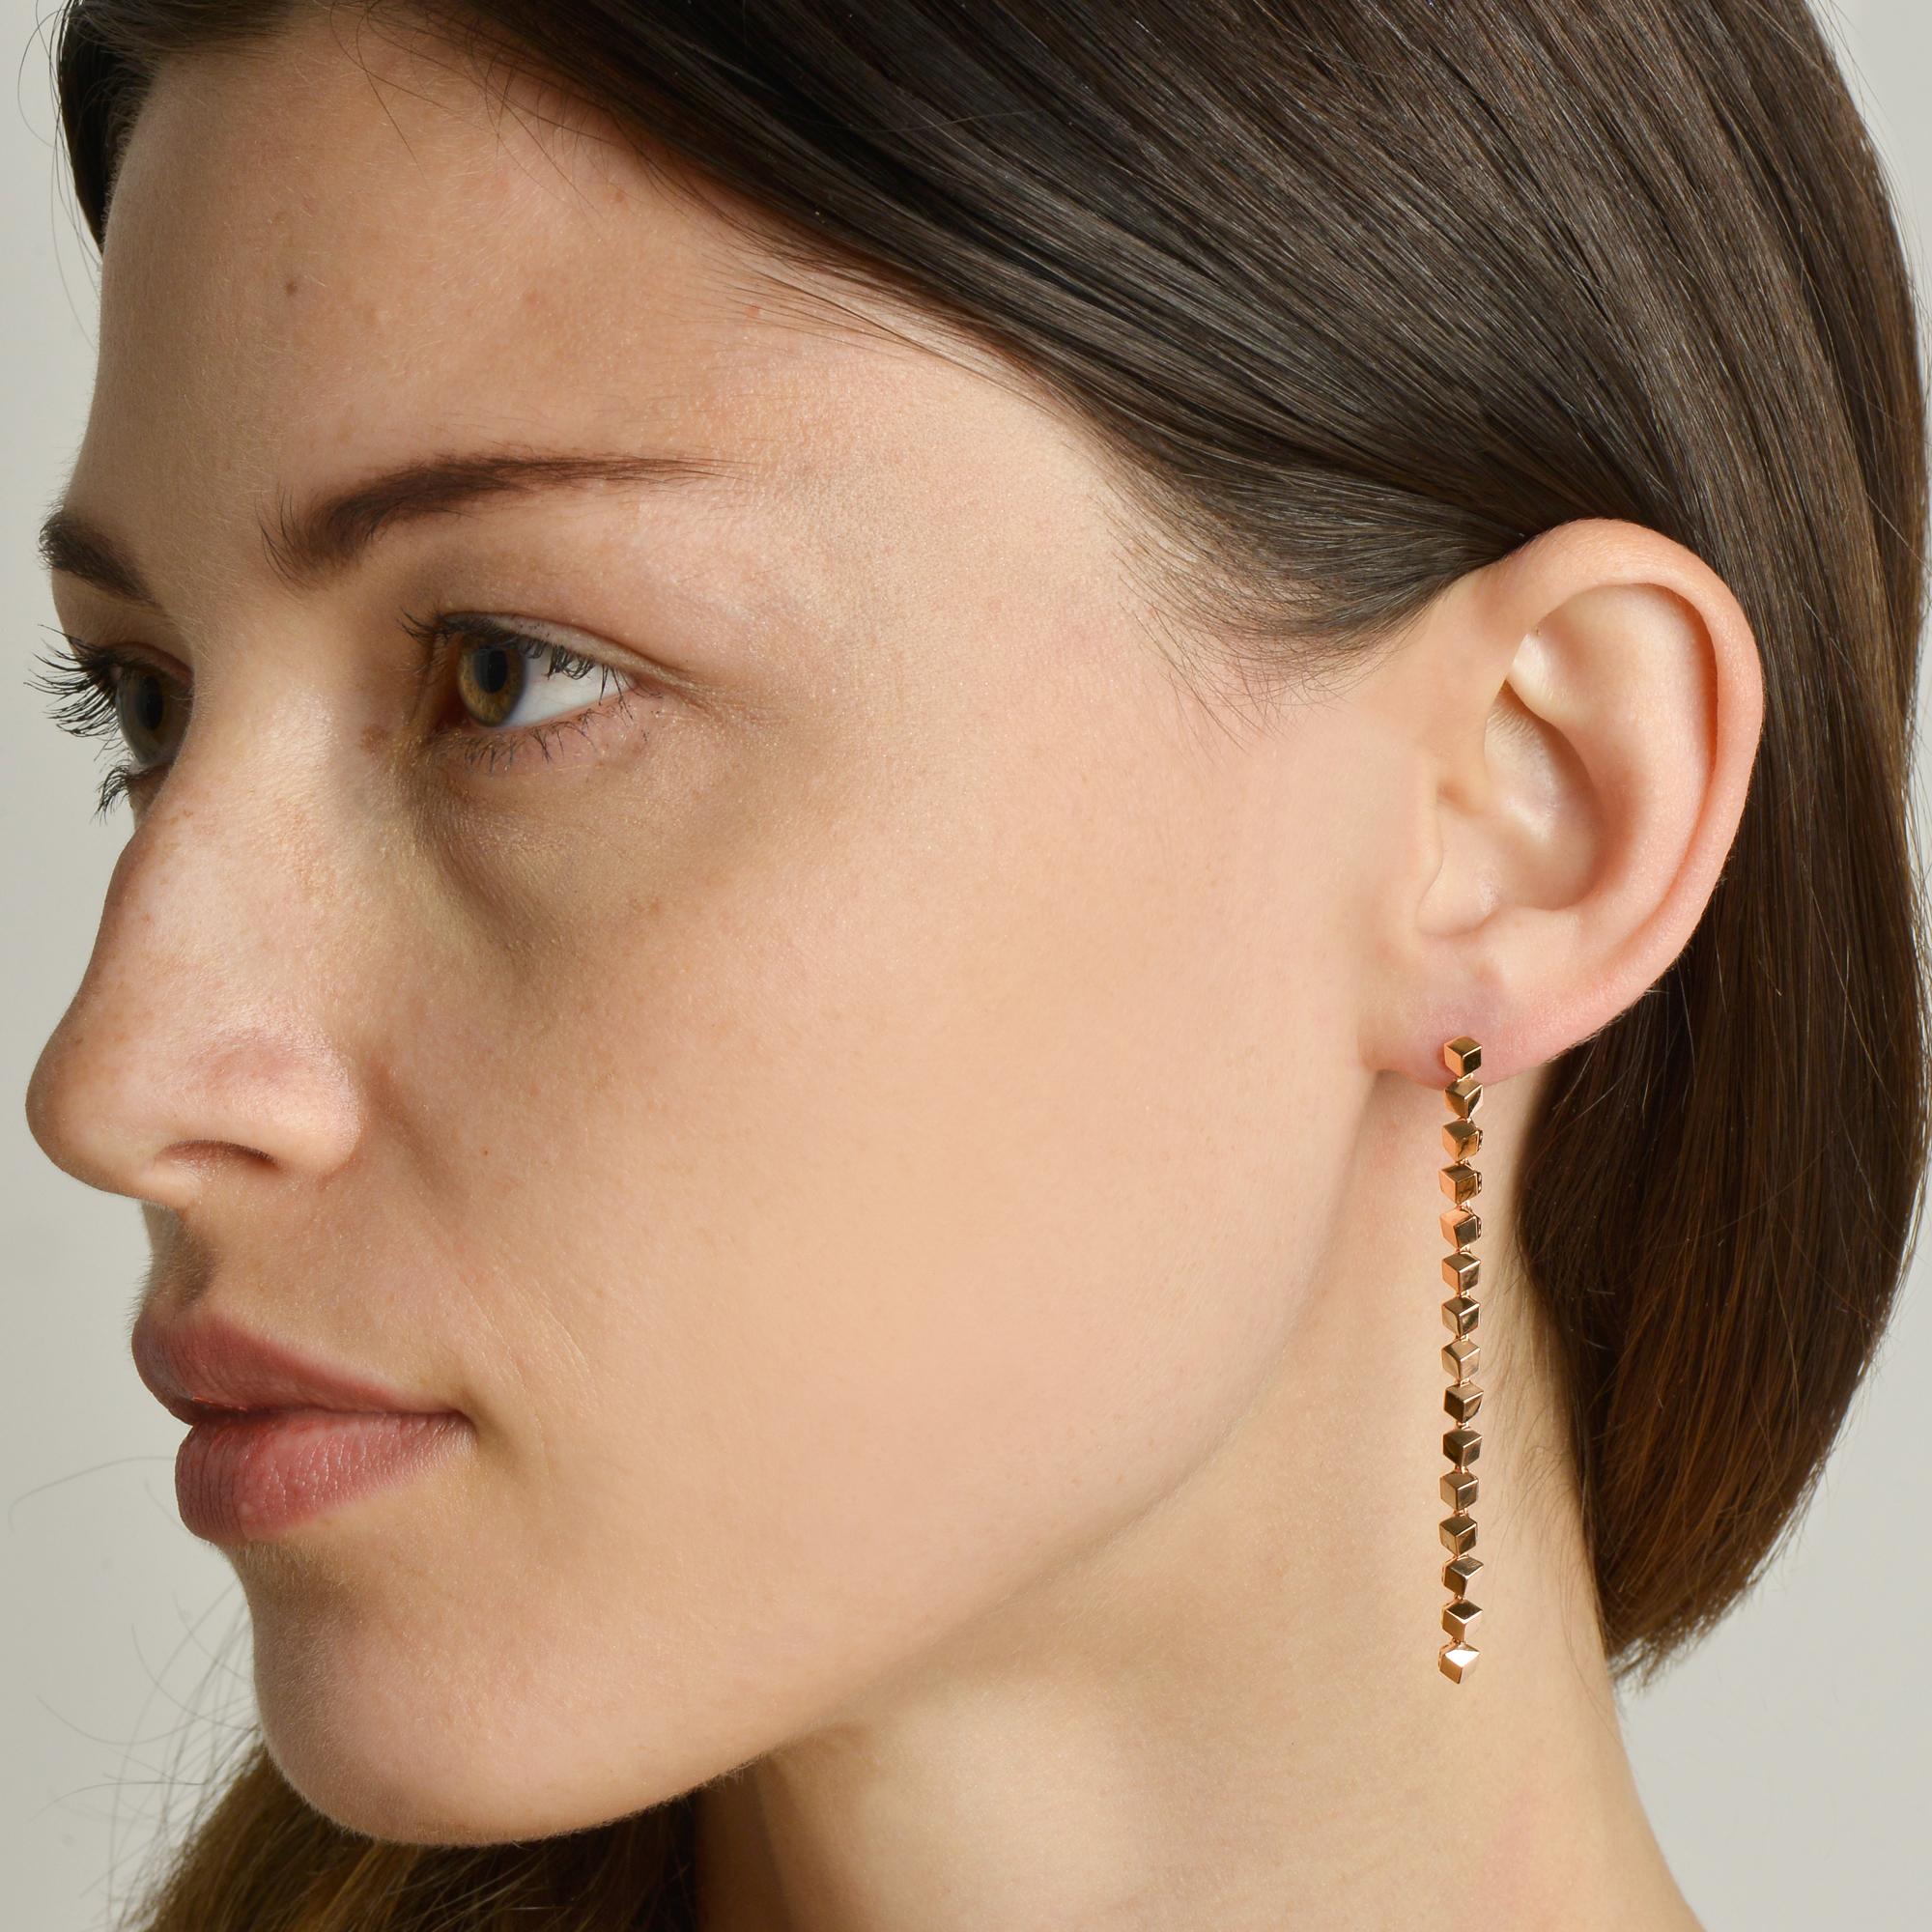 paolo earrings